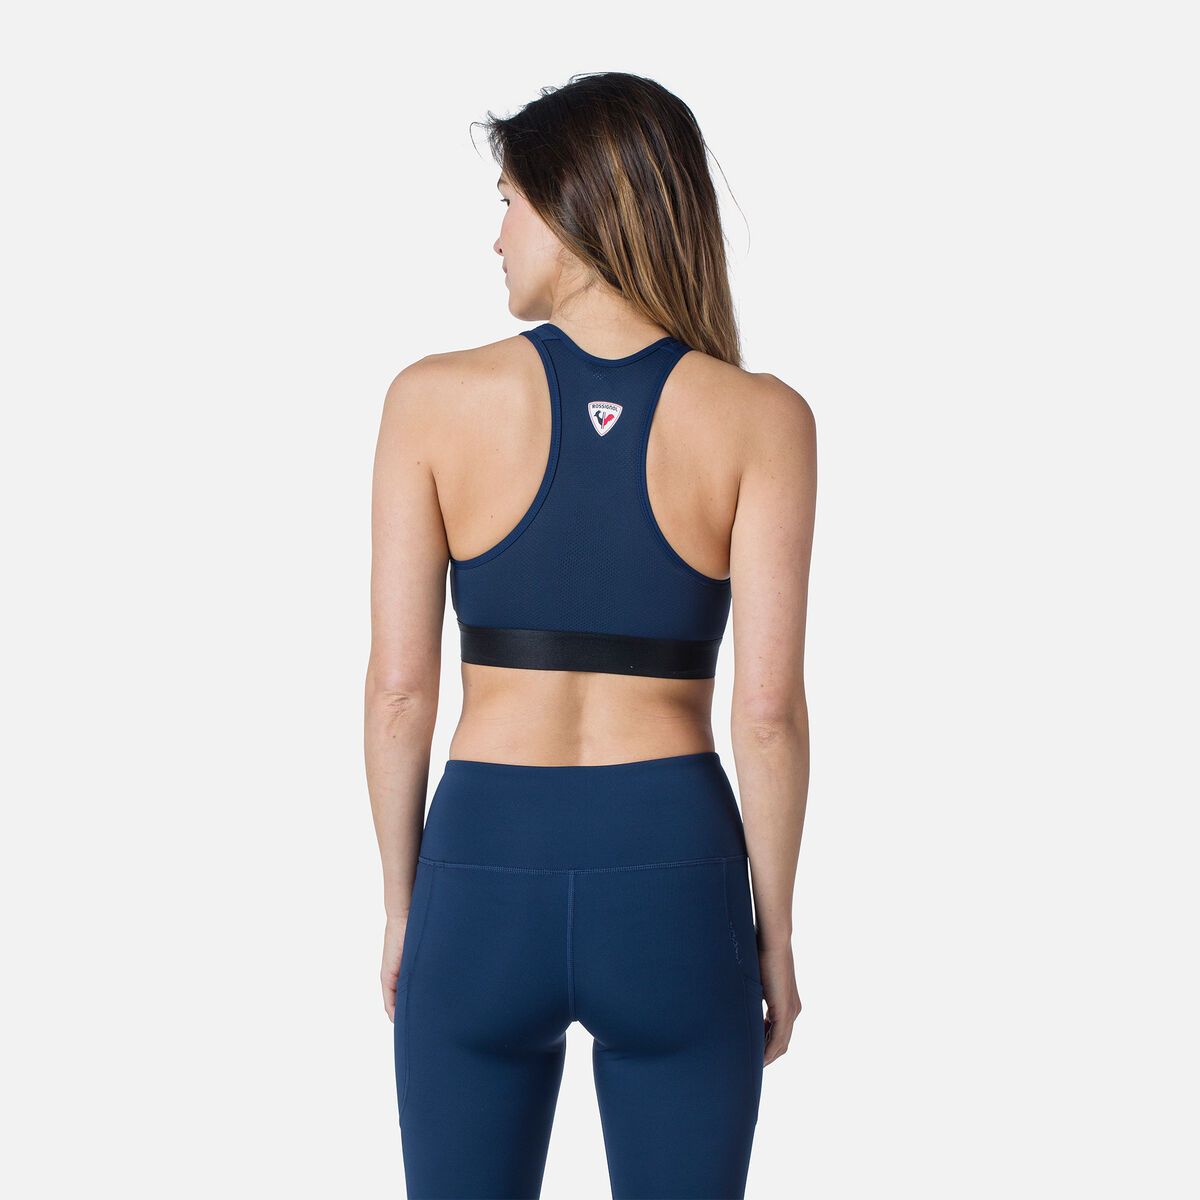 Rossignol Women's tech sports bra Blue